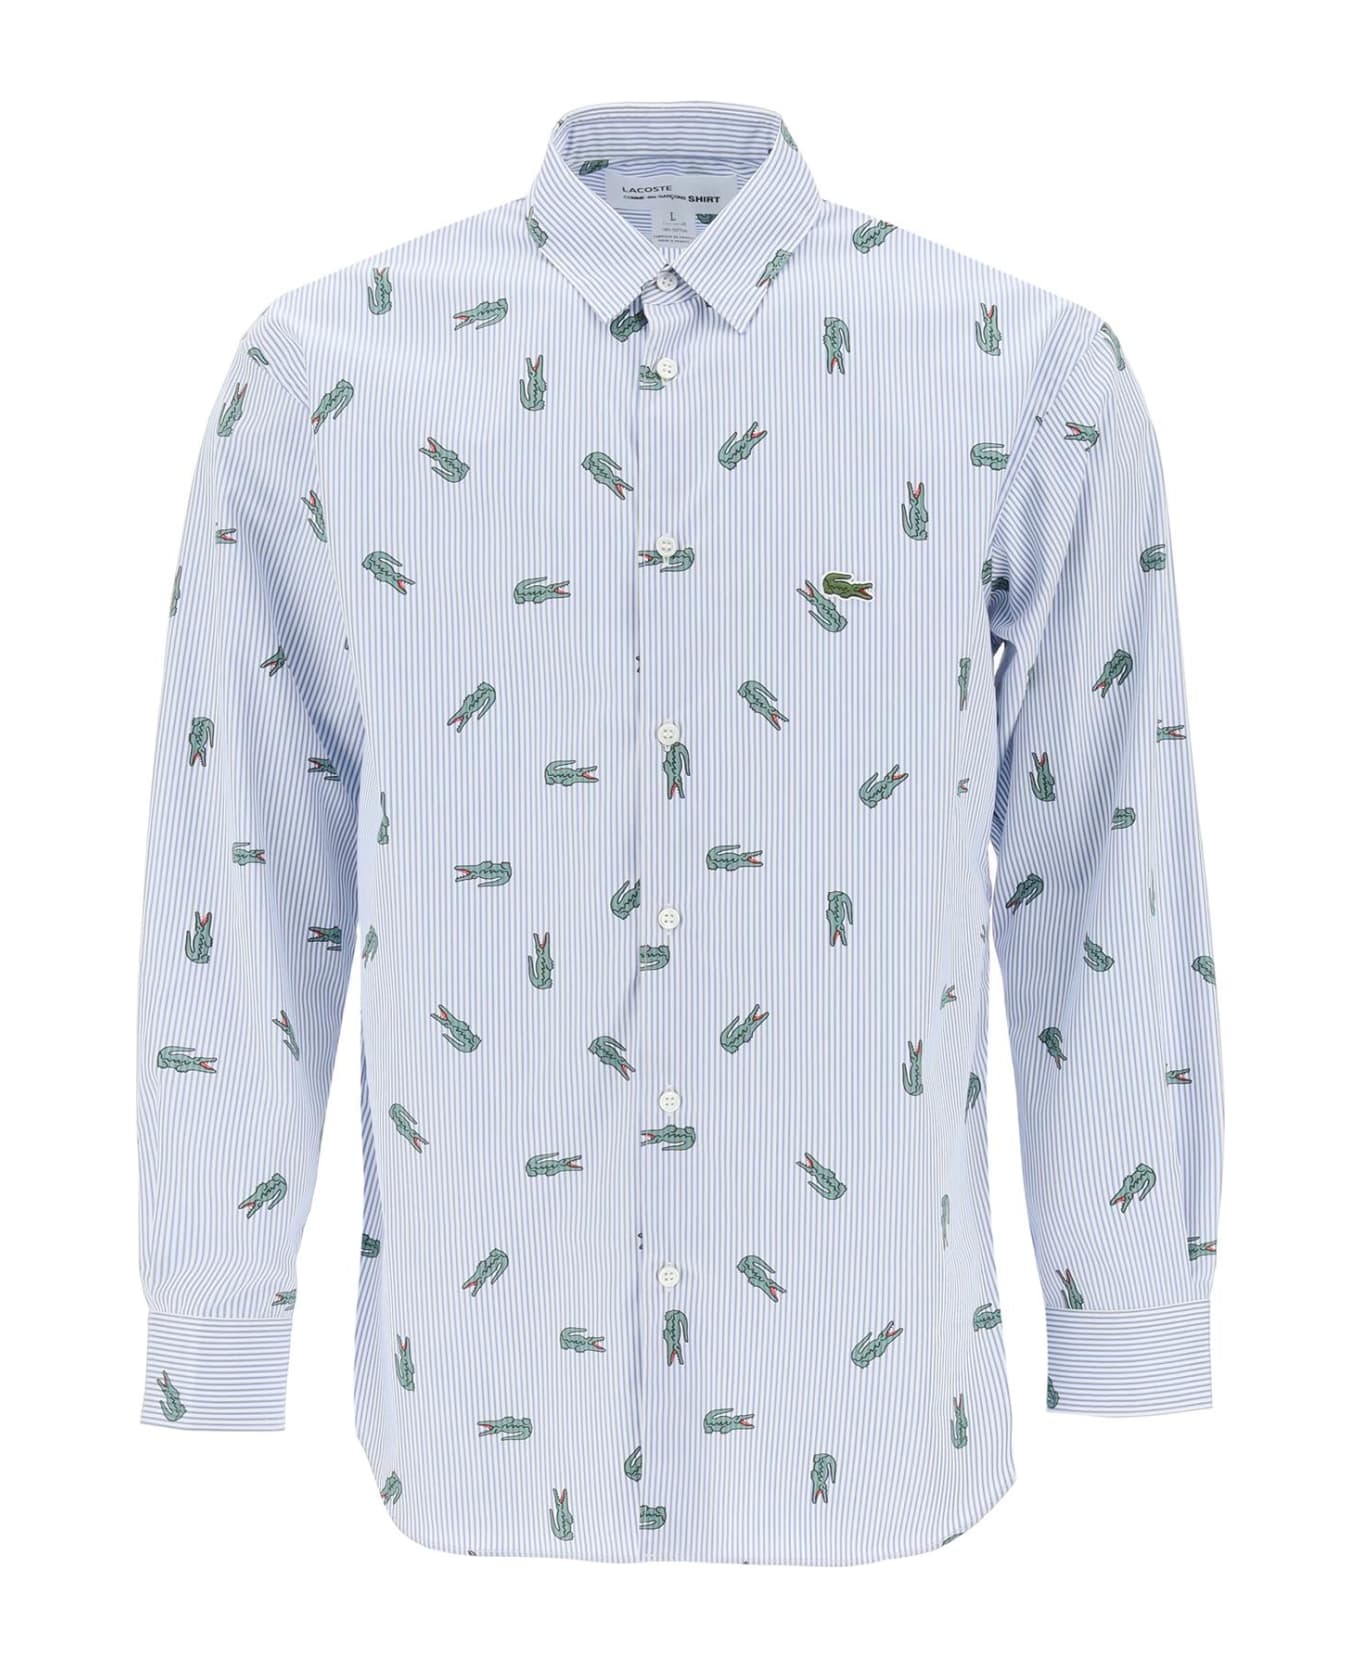 Comme des Garçons Shirt X Lacoste Oxford Shirt With Crocodile Motif - STRIPE (White)